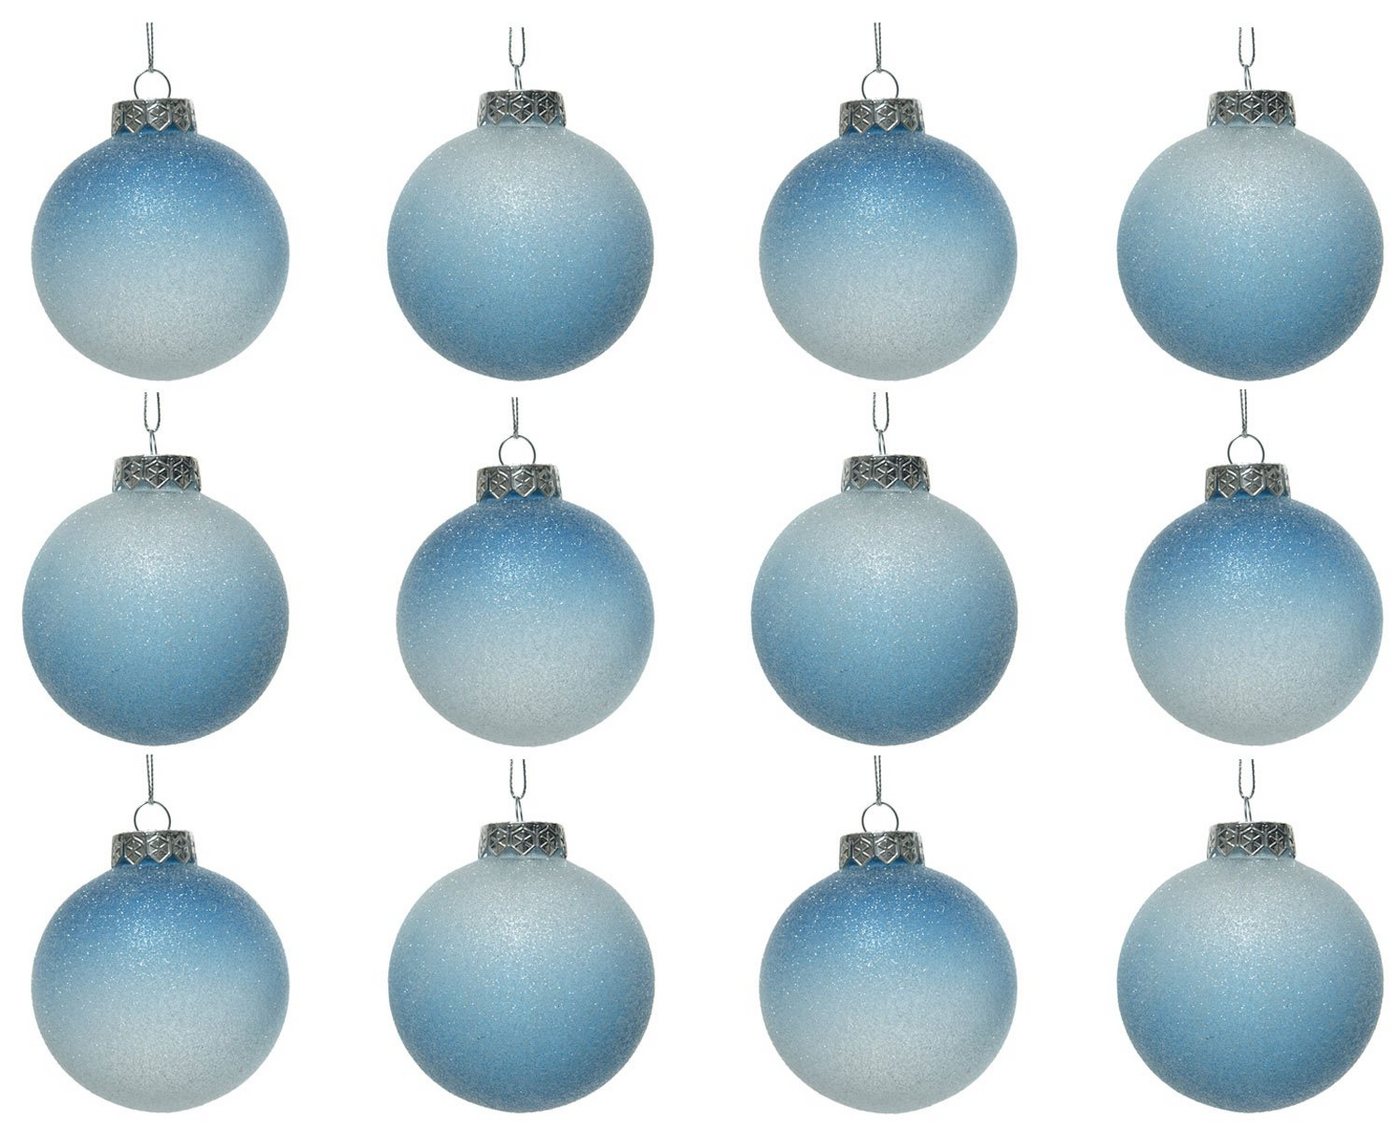 Decoris season decorations Weihnachtsbaumkugel, Weihnachtskugeln Kunststoff Farbverlauf 8cm blau / weiß, 12er Set von Decoris season decorations